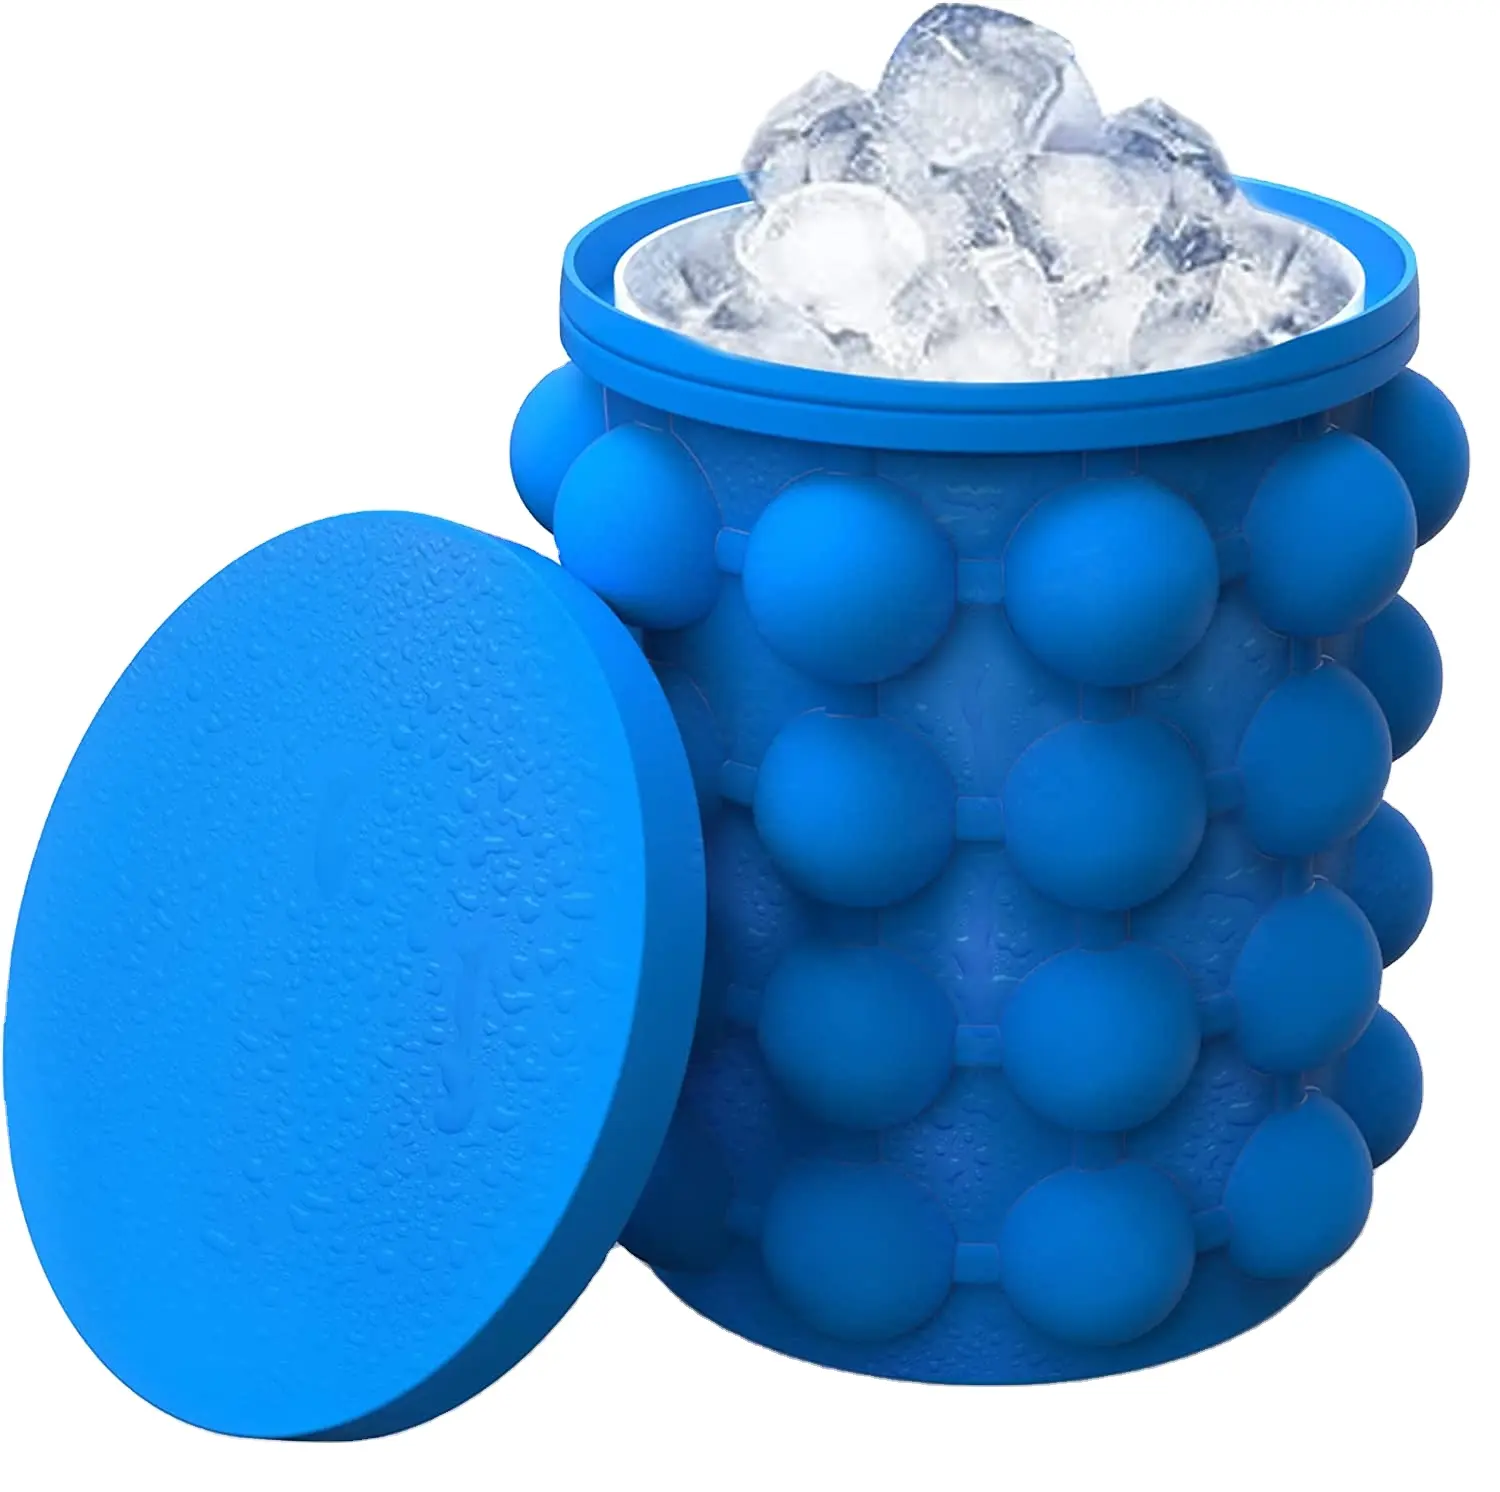 Stampo per cubetti di ghiaccio con cilindro per secchiello per il ghiaccio salvaspazio semicircolare in silicone portatile con coperchio blu rosso